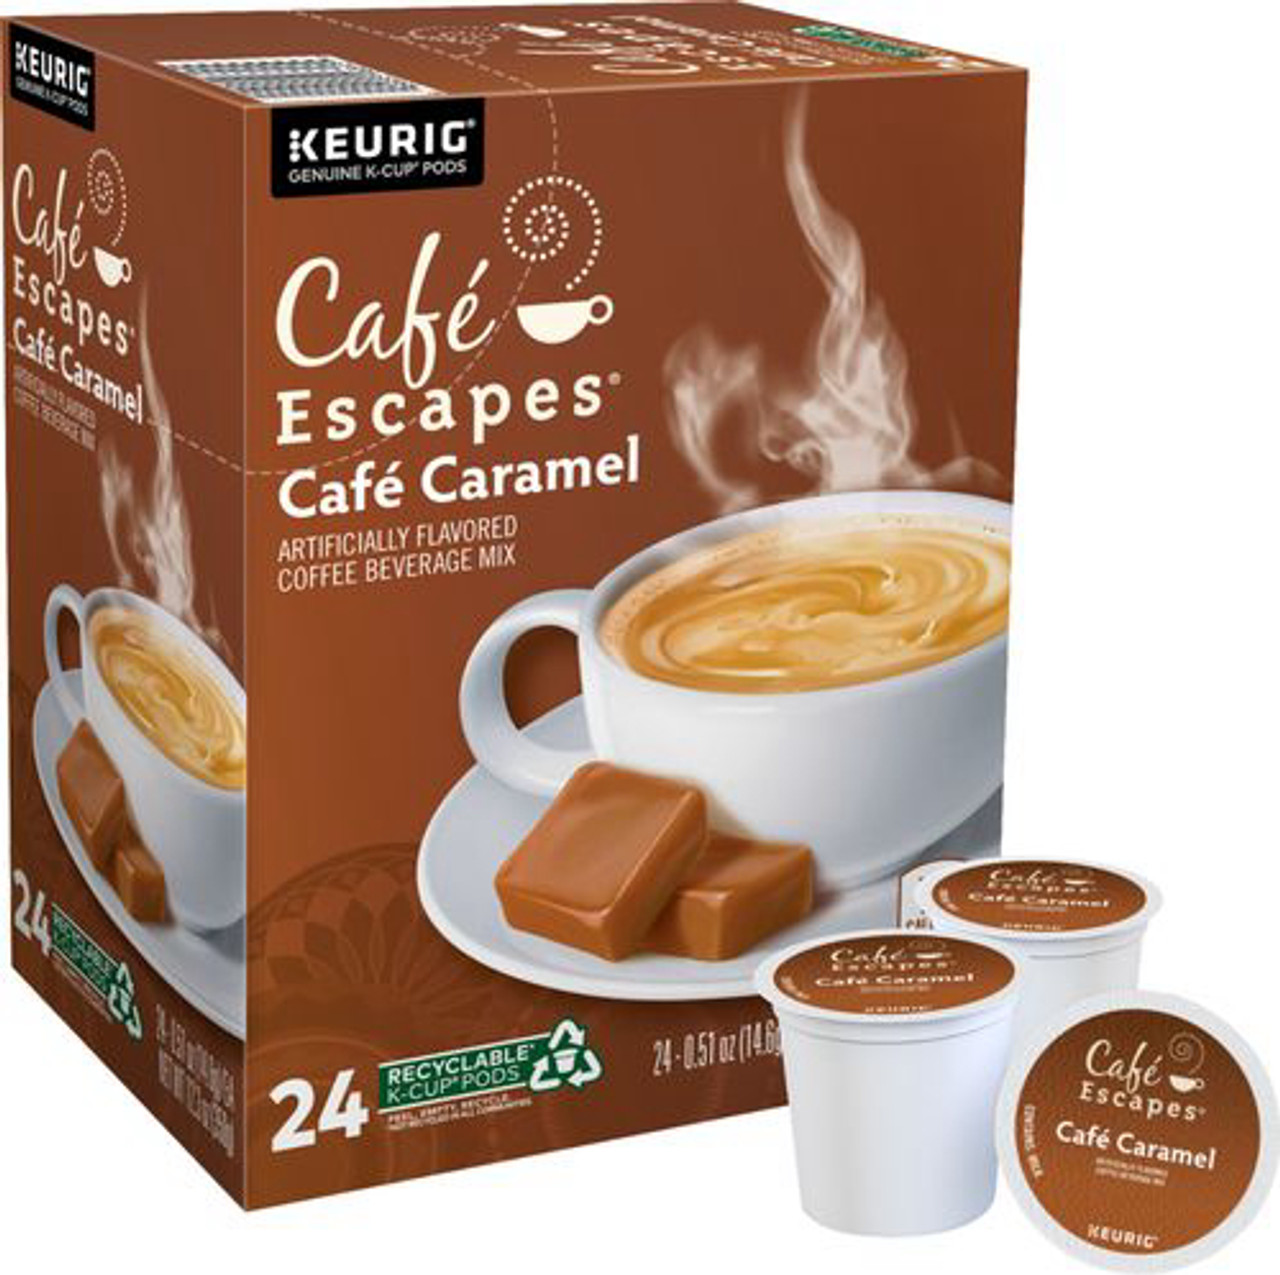 Café Escapes Café Caramel, Keurig Single-Serve K-Cup Pods, 24 Count